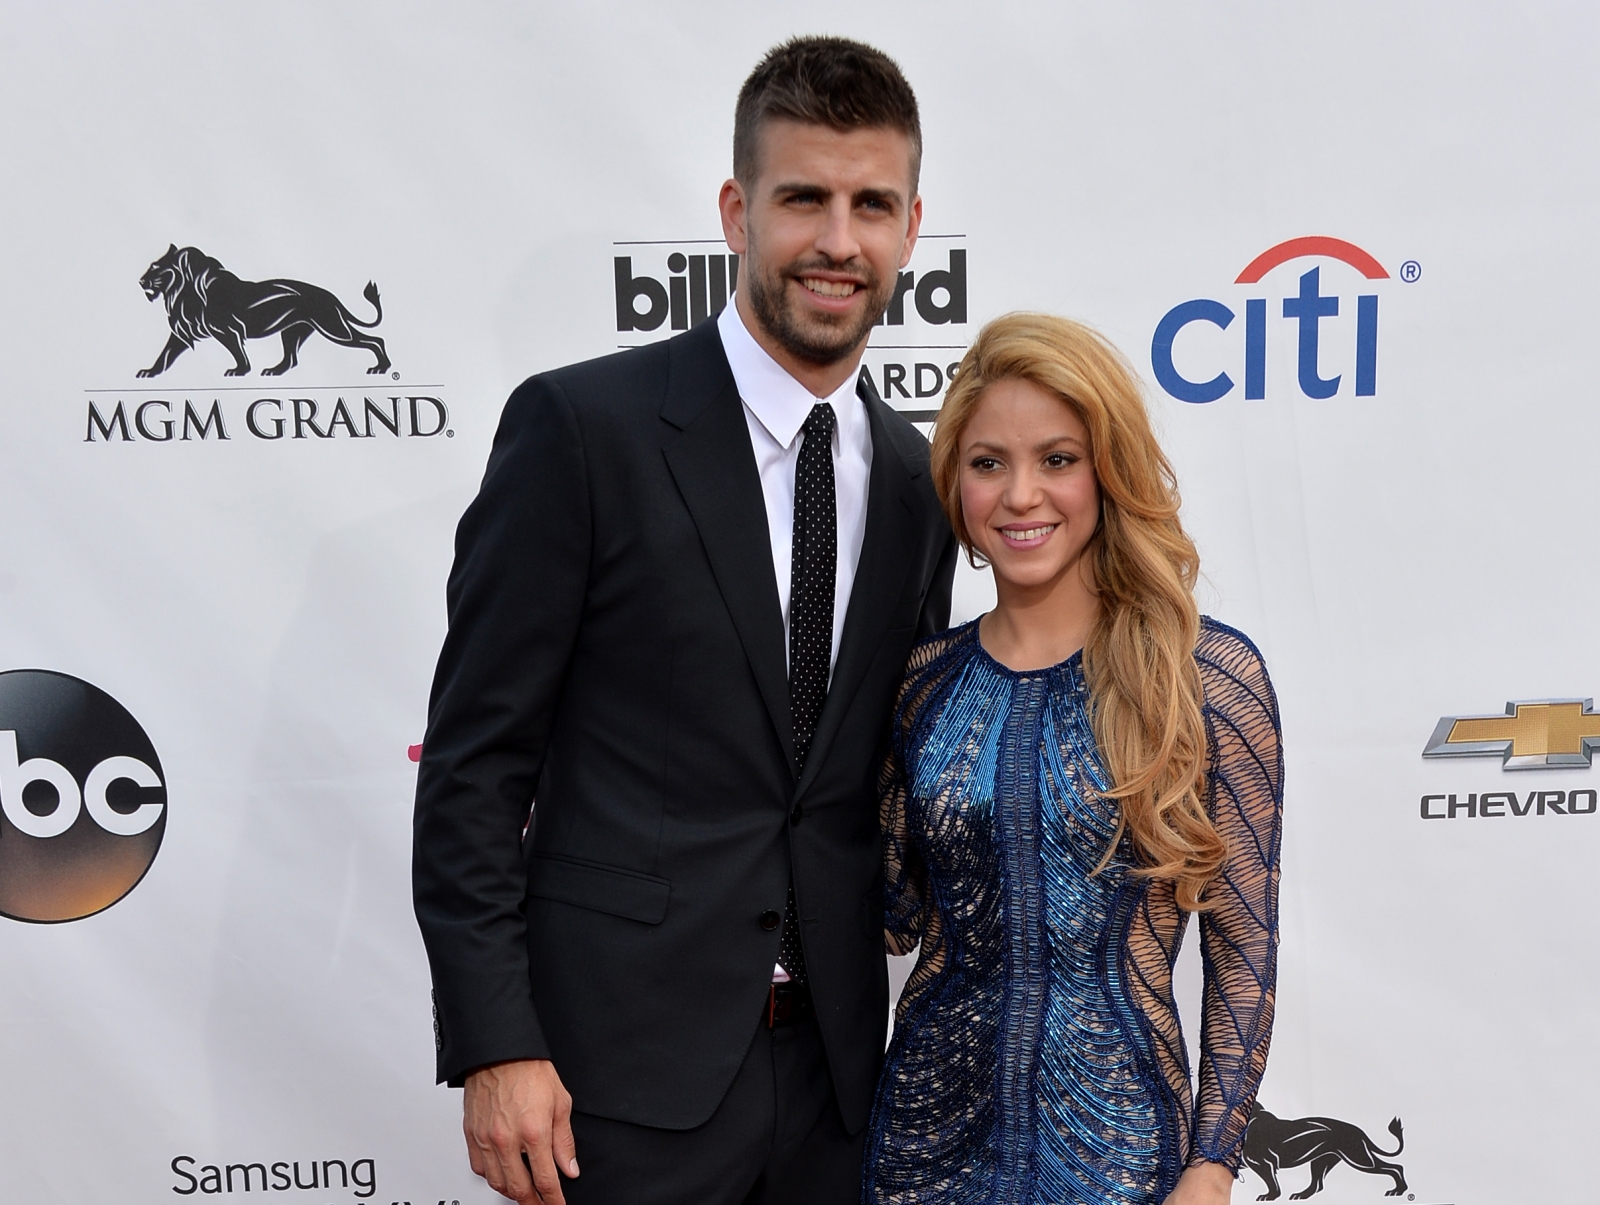 Shakira and her partner